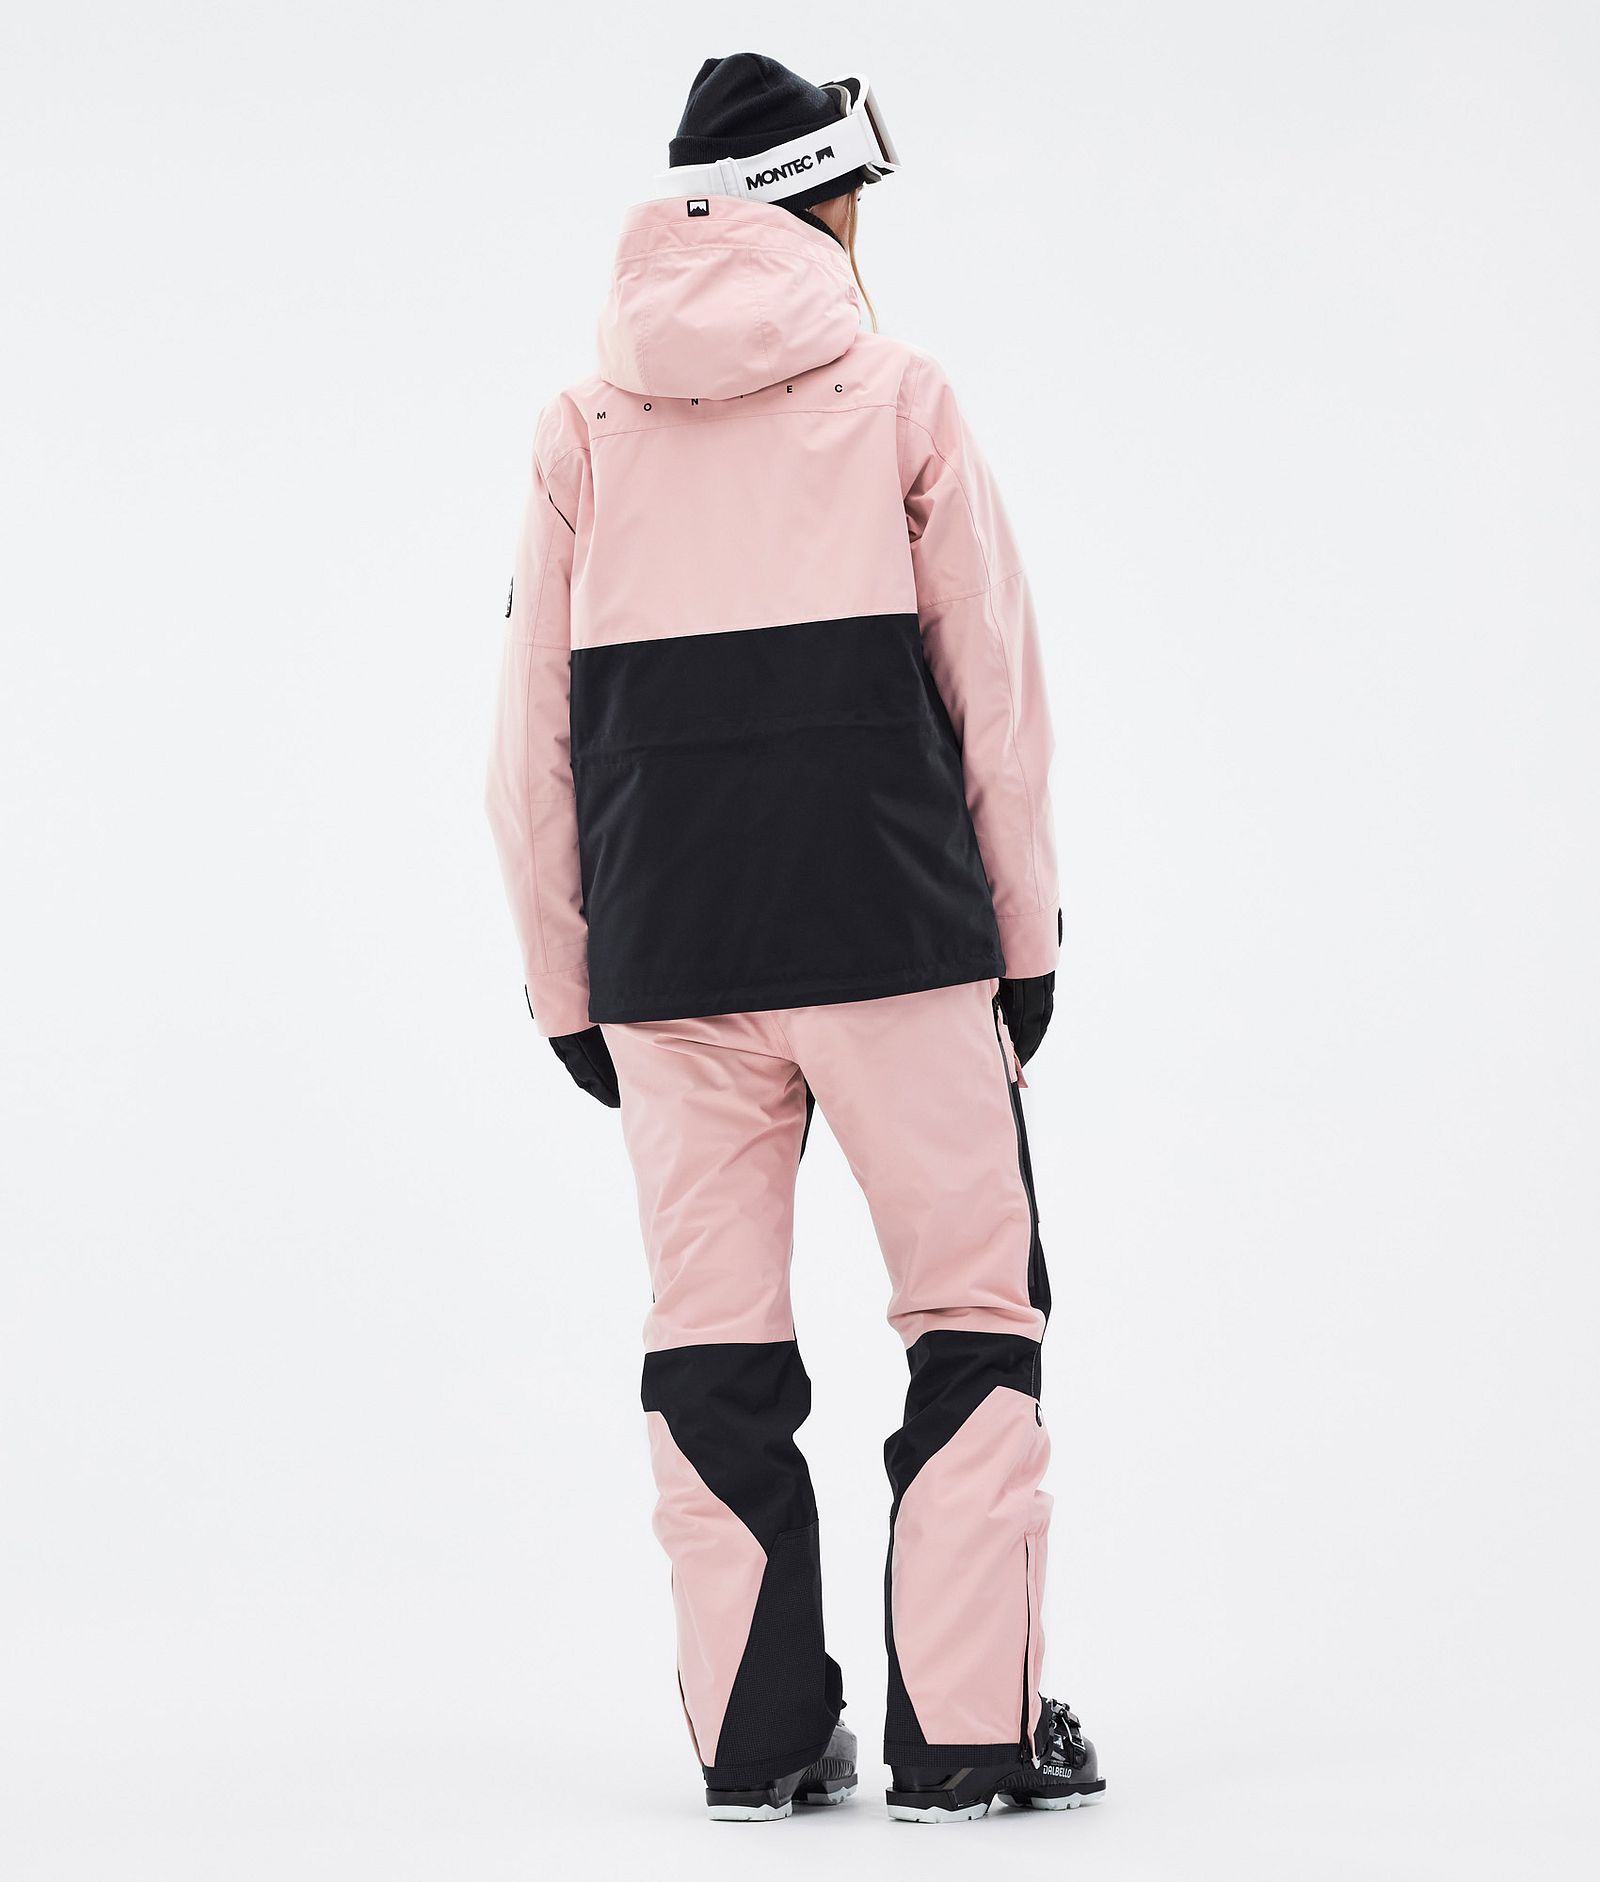 Doom W Ski Outfit Women Soft Pink/Black